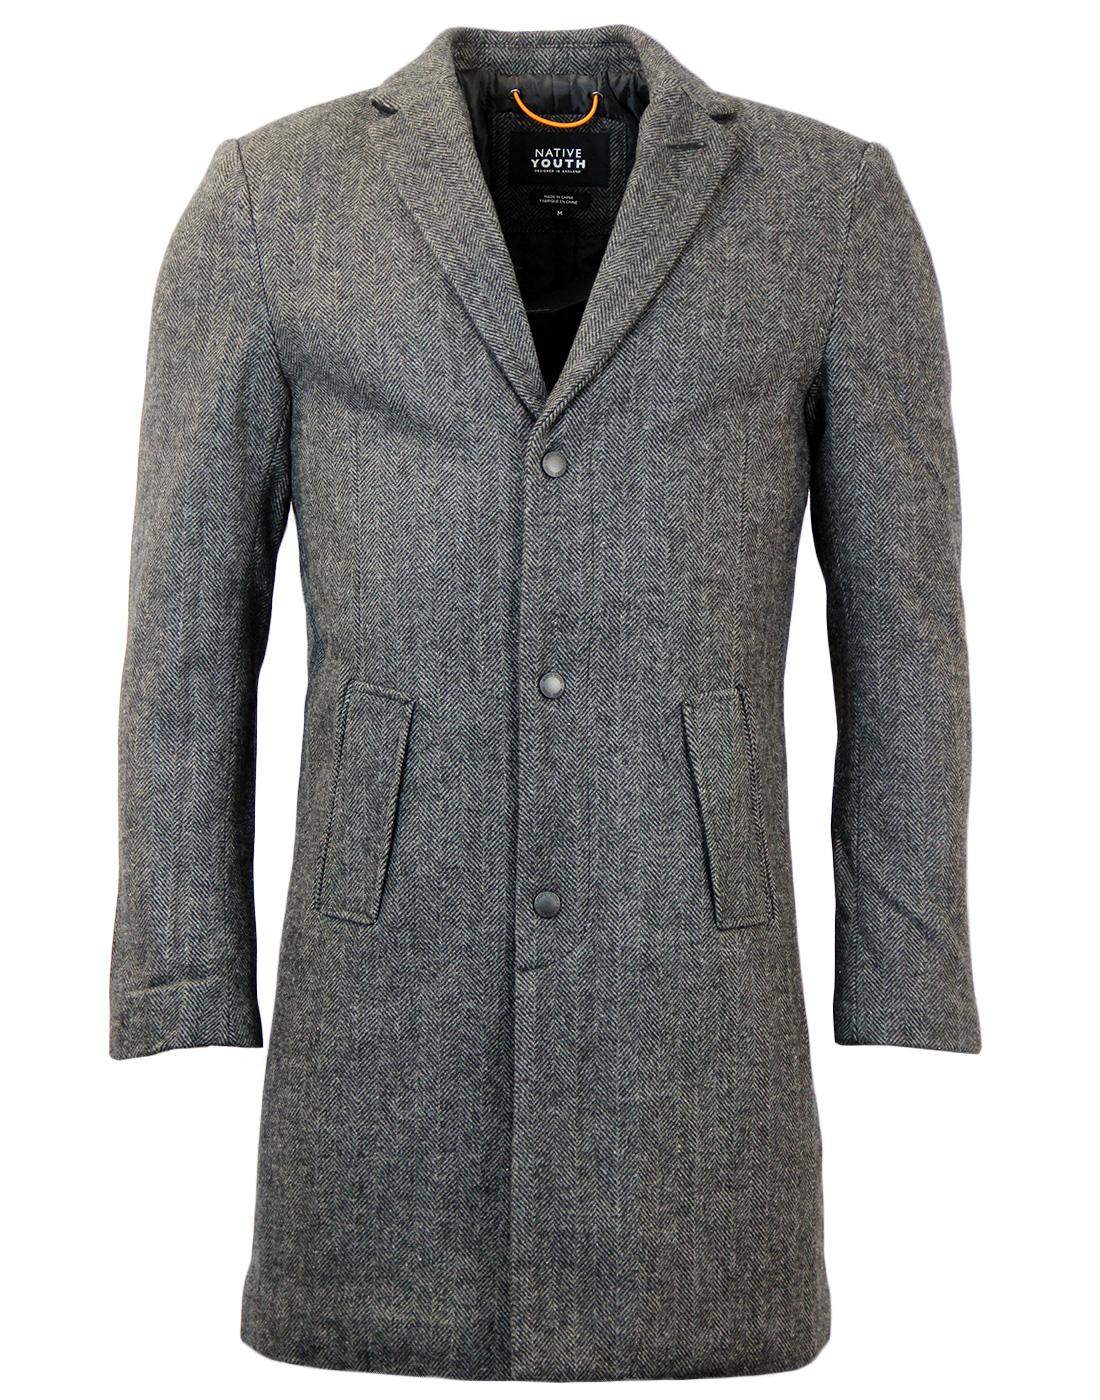 NATIVE YOUTH Retro Mod Wool Herringbone Overcoat